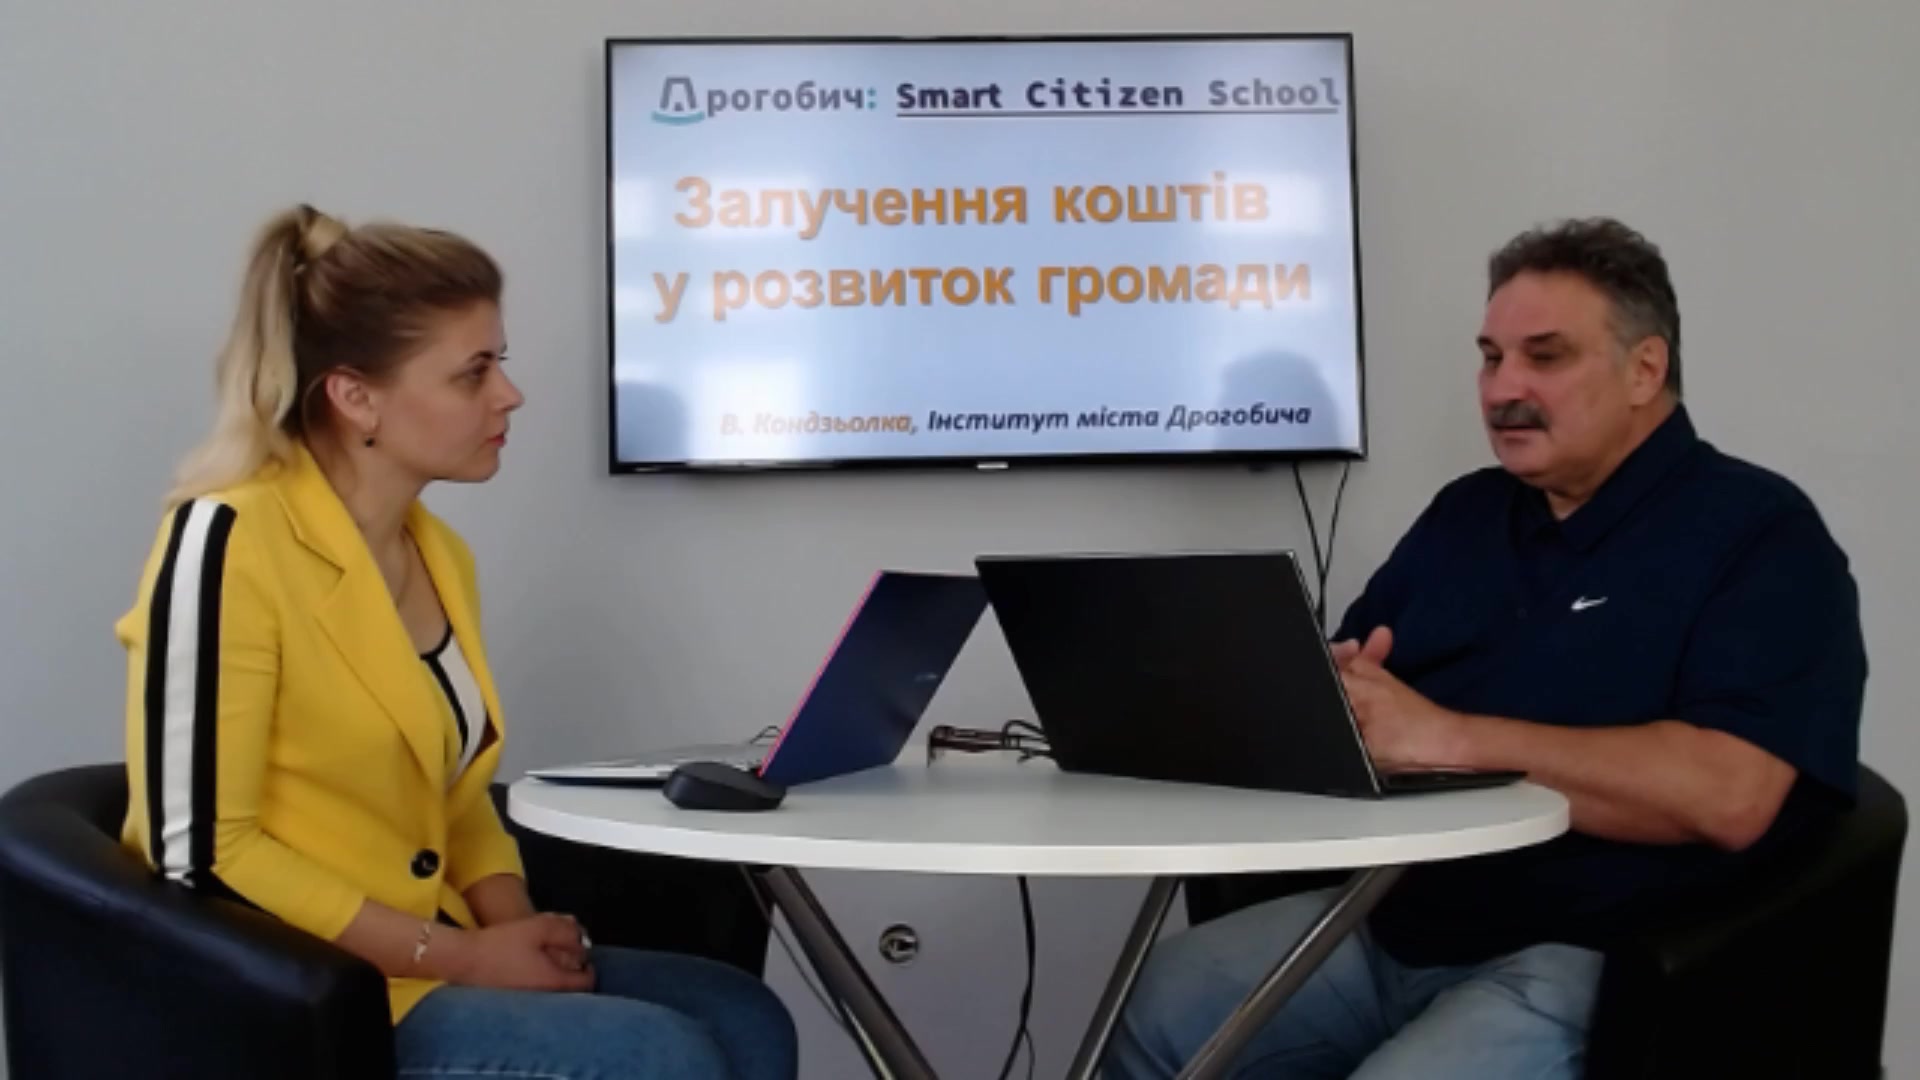 «Дрогобич: Smart City – школа розумного громадянина»: Залучення коштів у розвиток громади Дрогобича